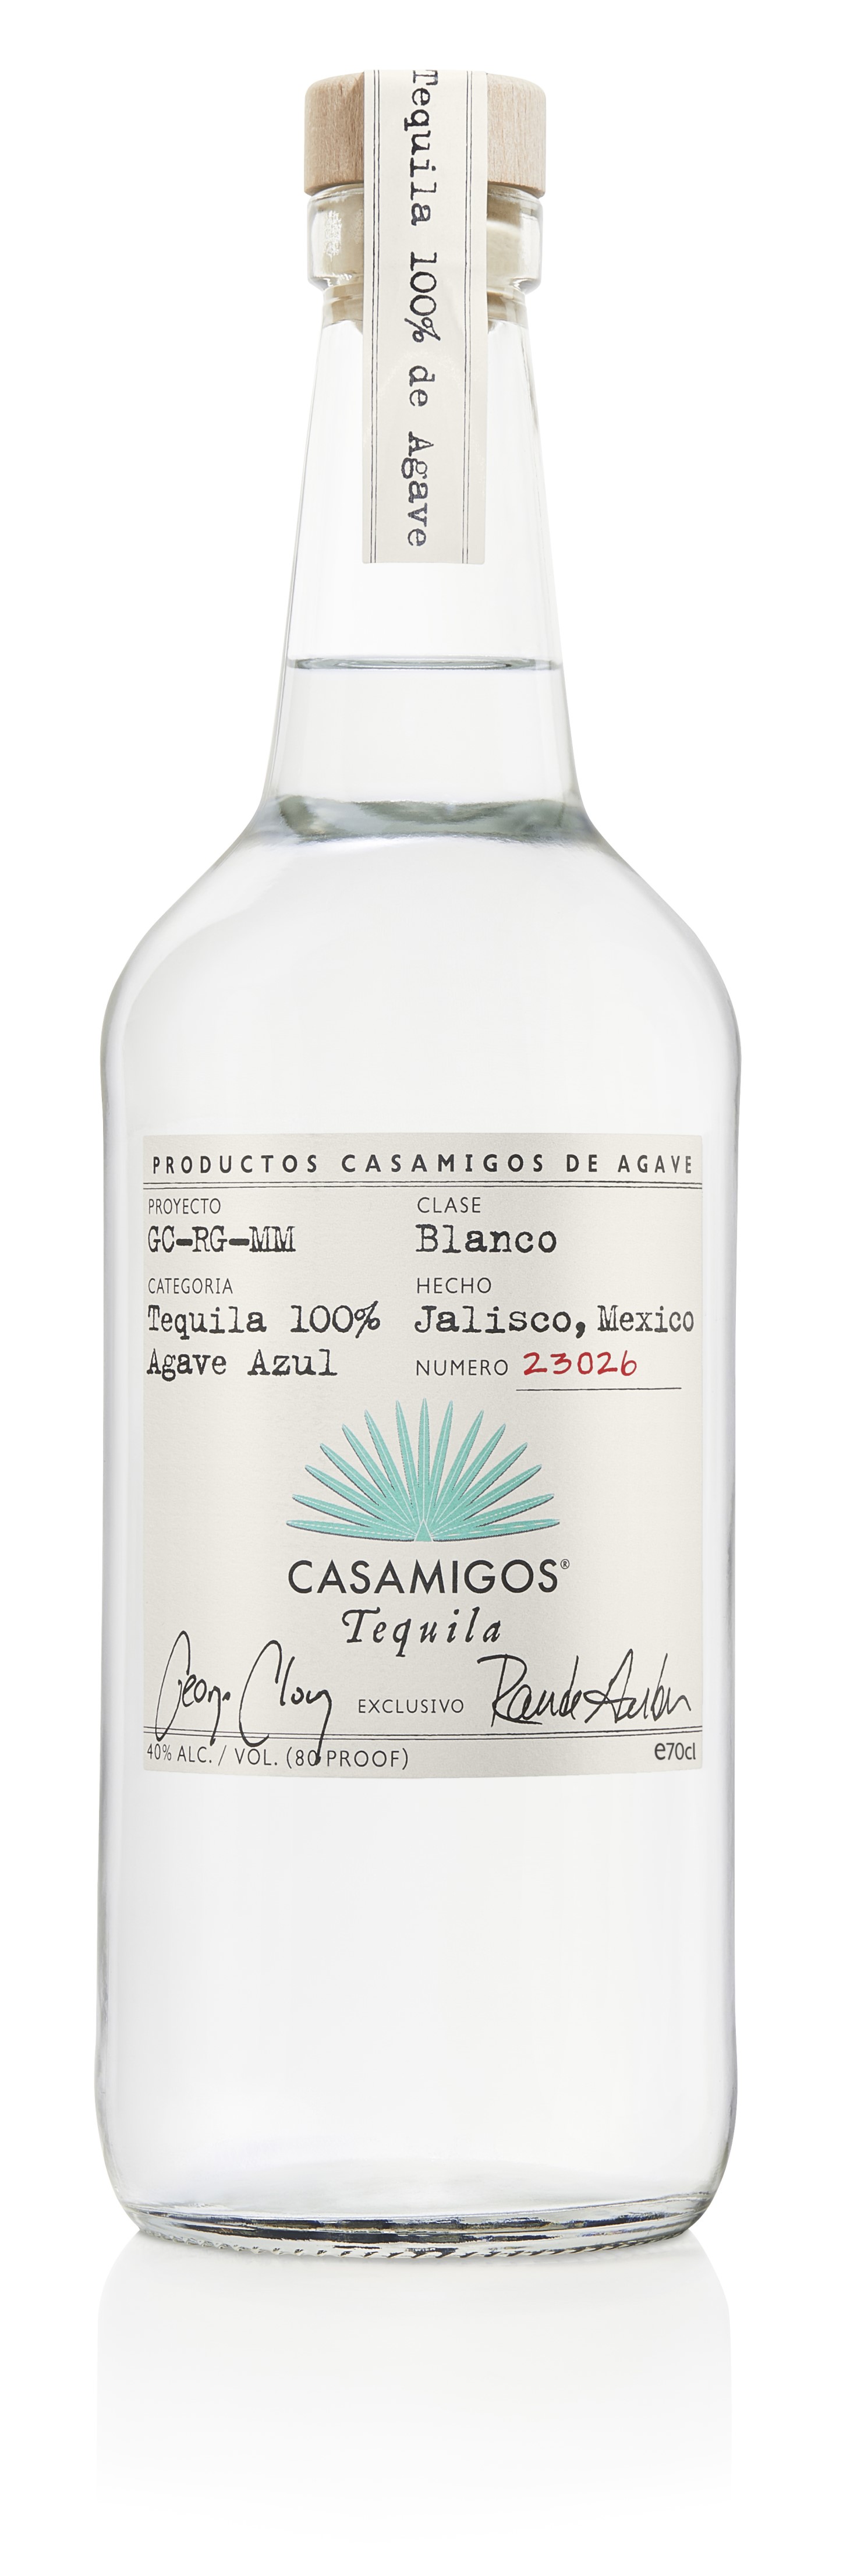 Casamigos Tequila Blanco 0,7